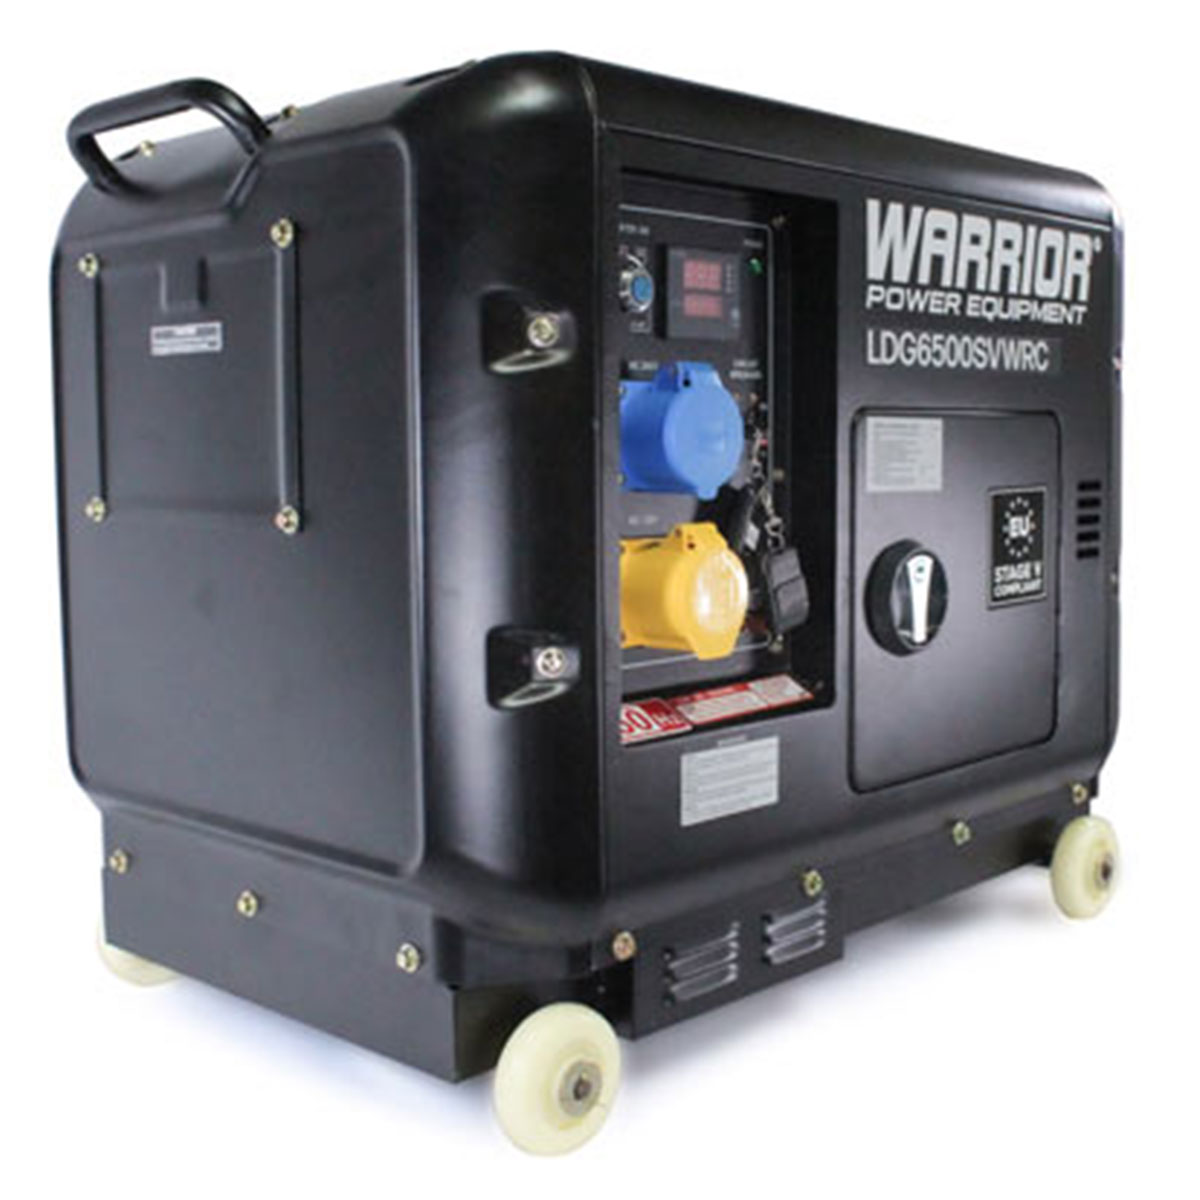 warrior-LDG6500SVWRC-04